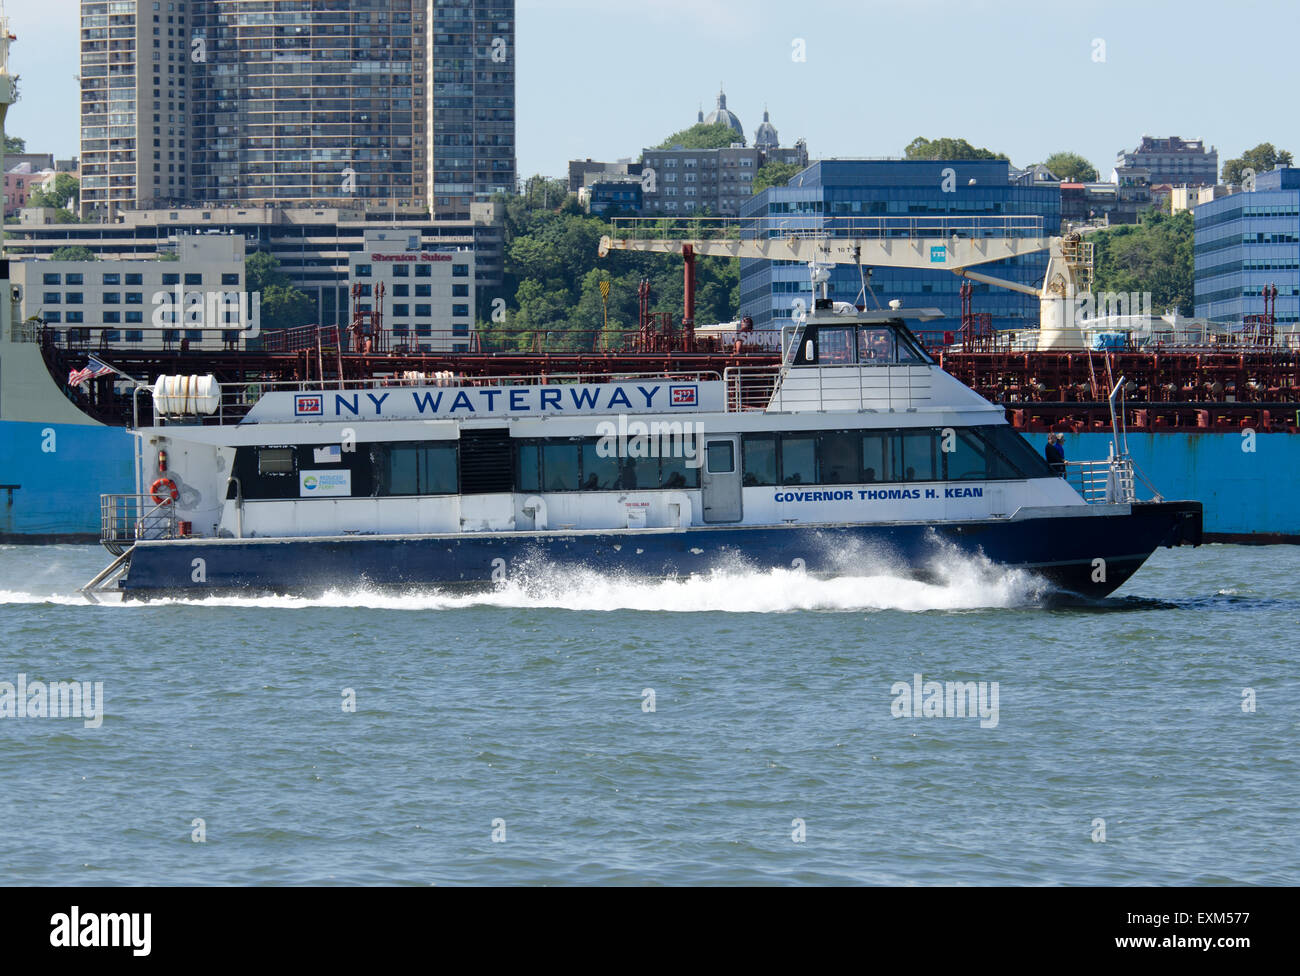 NY vie navigabili di ferry boat governatore Thomas H. Kean' un catamarano ad alta velocità, Haverstraw-Ossining traghetto sul fiume Hudson, New York, NY Foto Stock